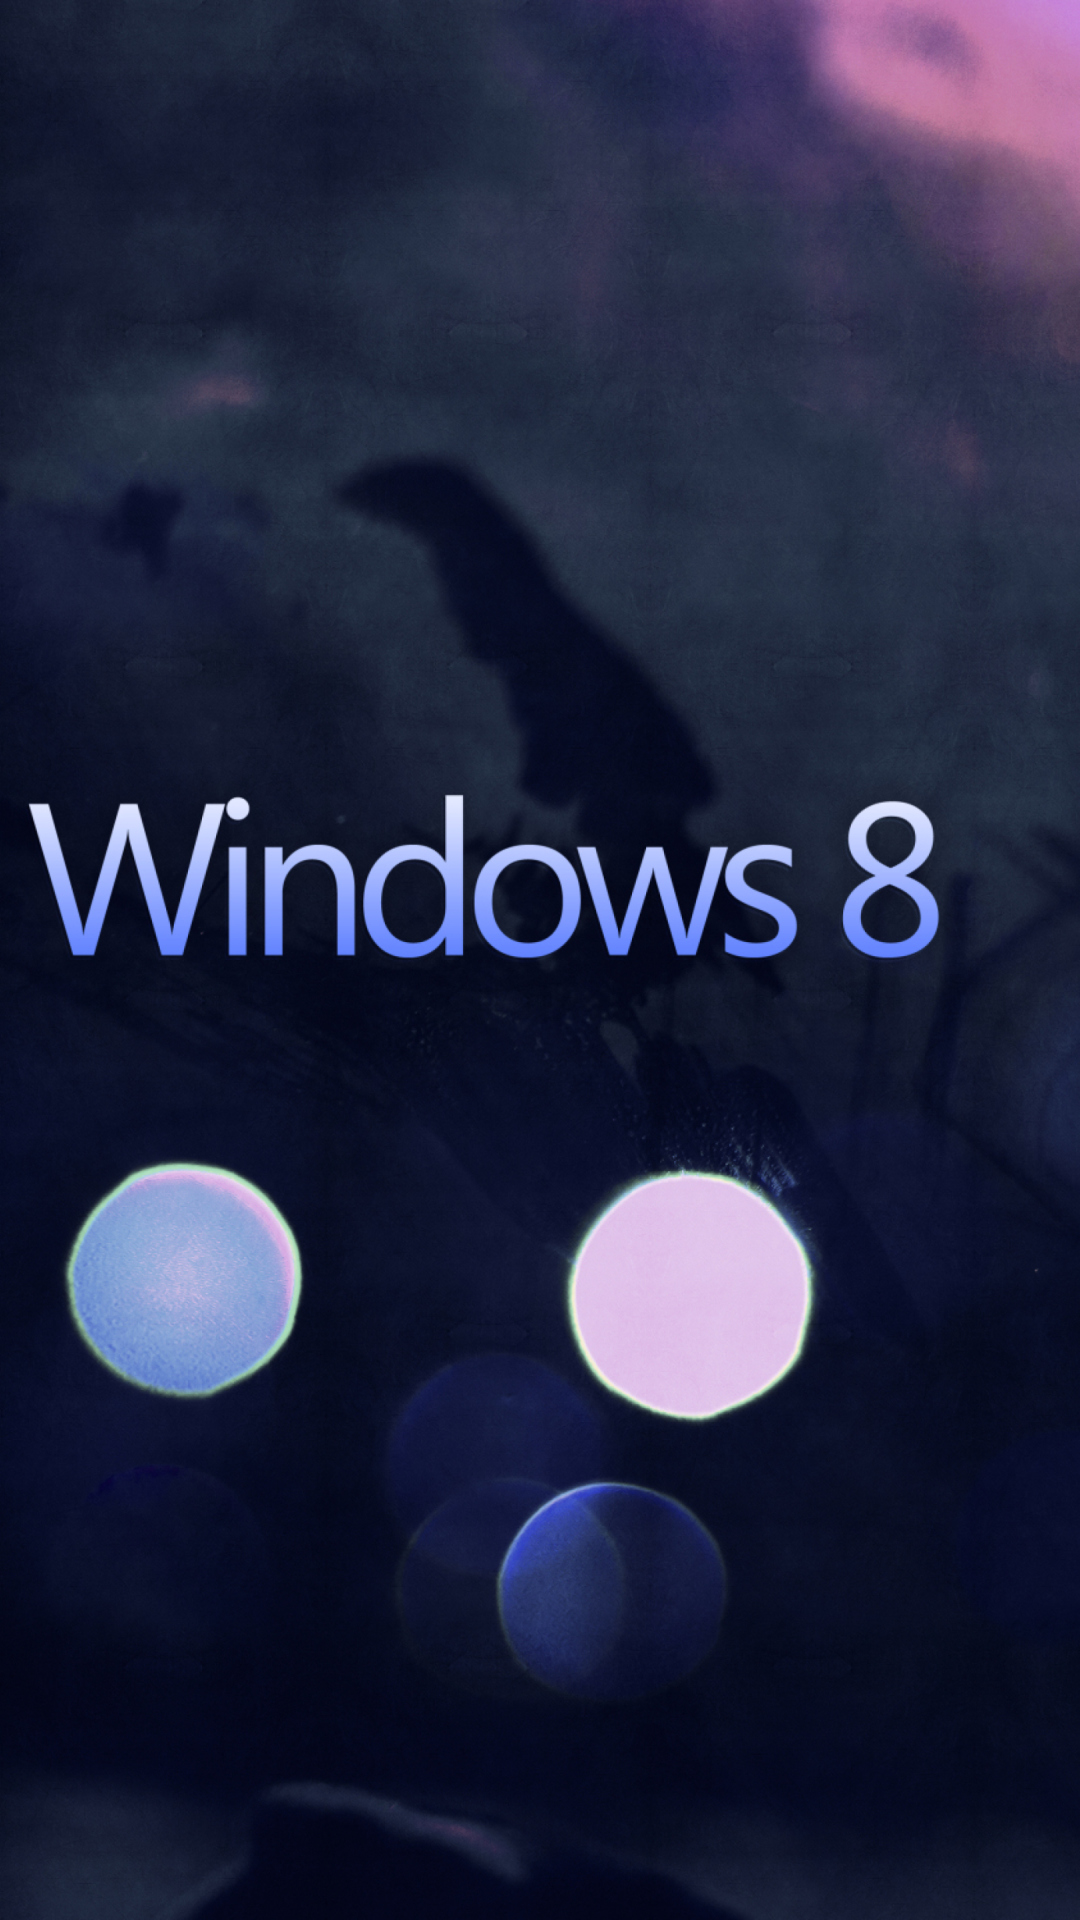 Windows 8 - Hi-Tech screenshot #1 1080x1920